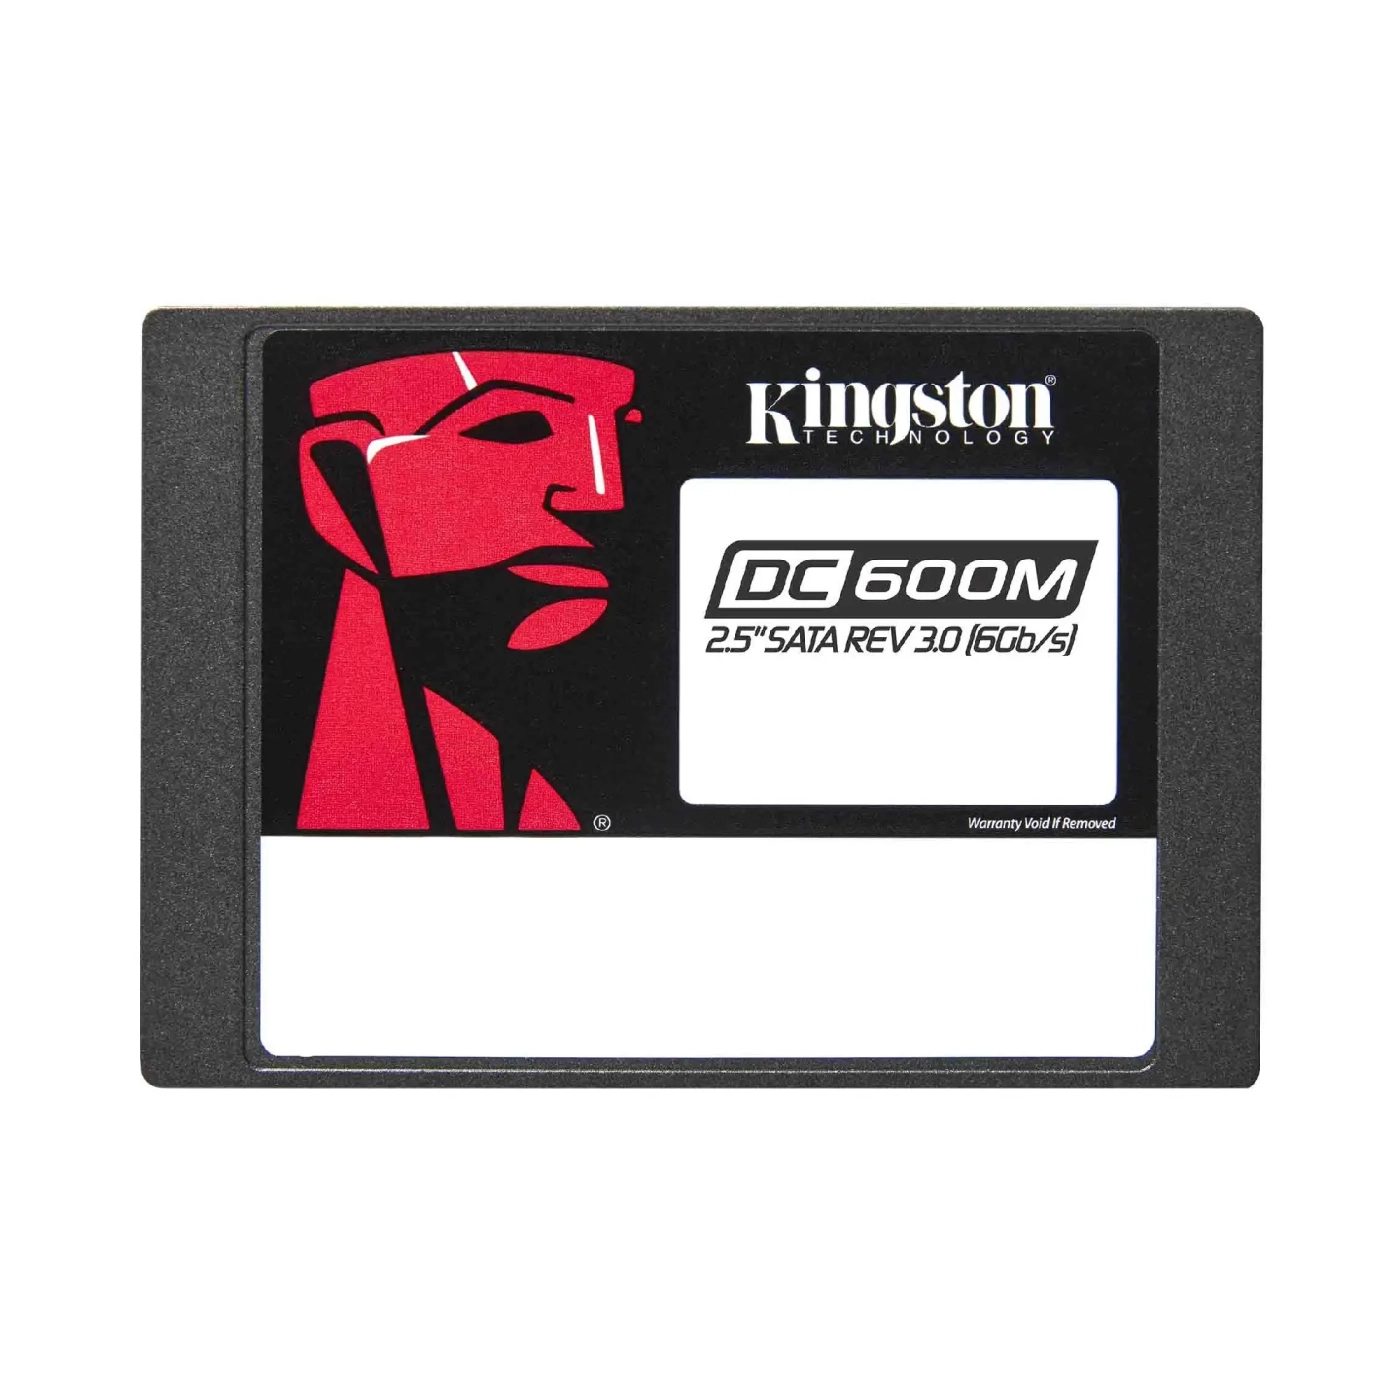 Купить SSD диск Kingston DC600M 960GB 2.5" - фото 1